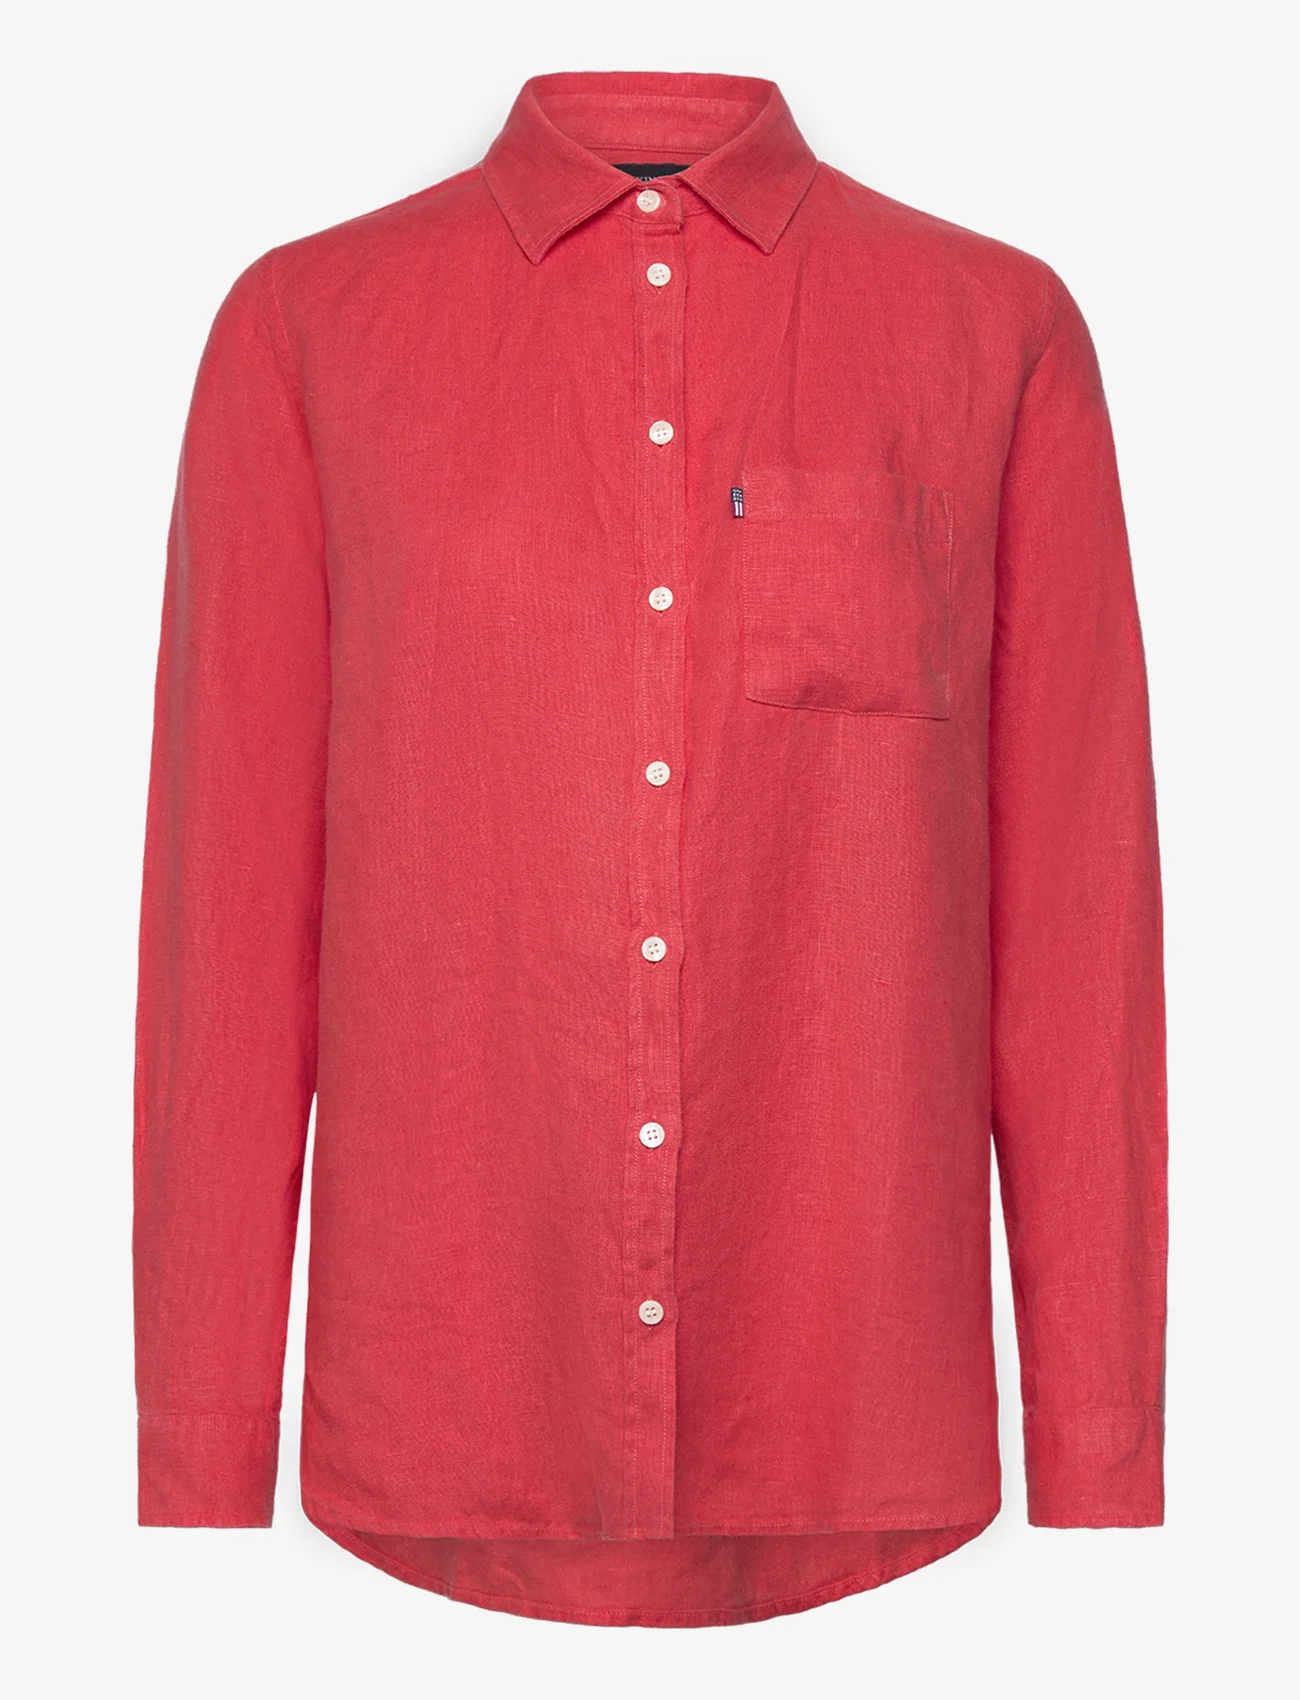 Lexington Clothing - Isa Linen Shirt - långärmade skjortor - red - 0